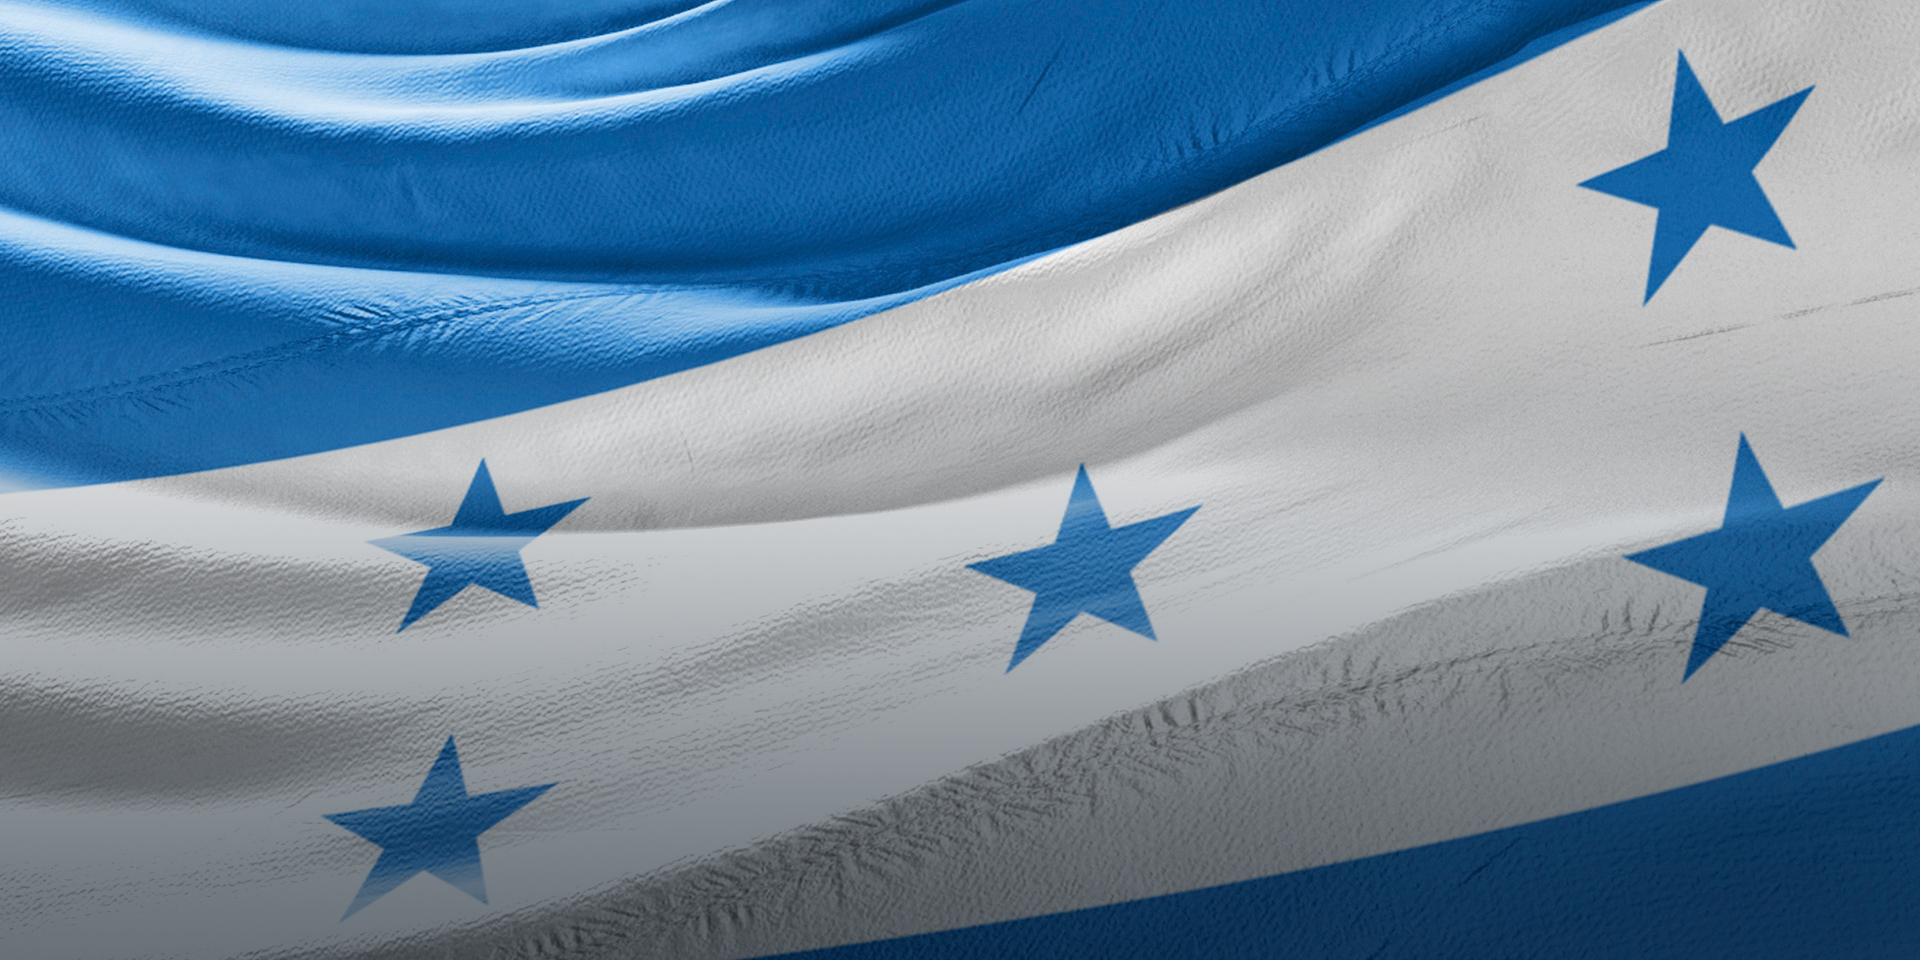 A close-up image of the Honduran flag waving.